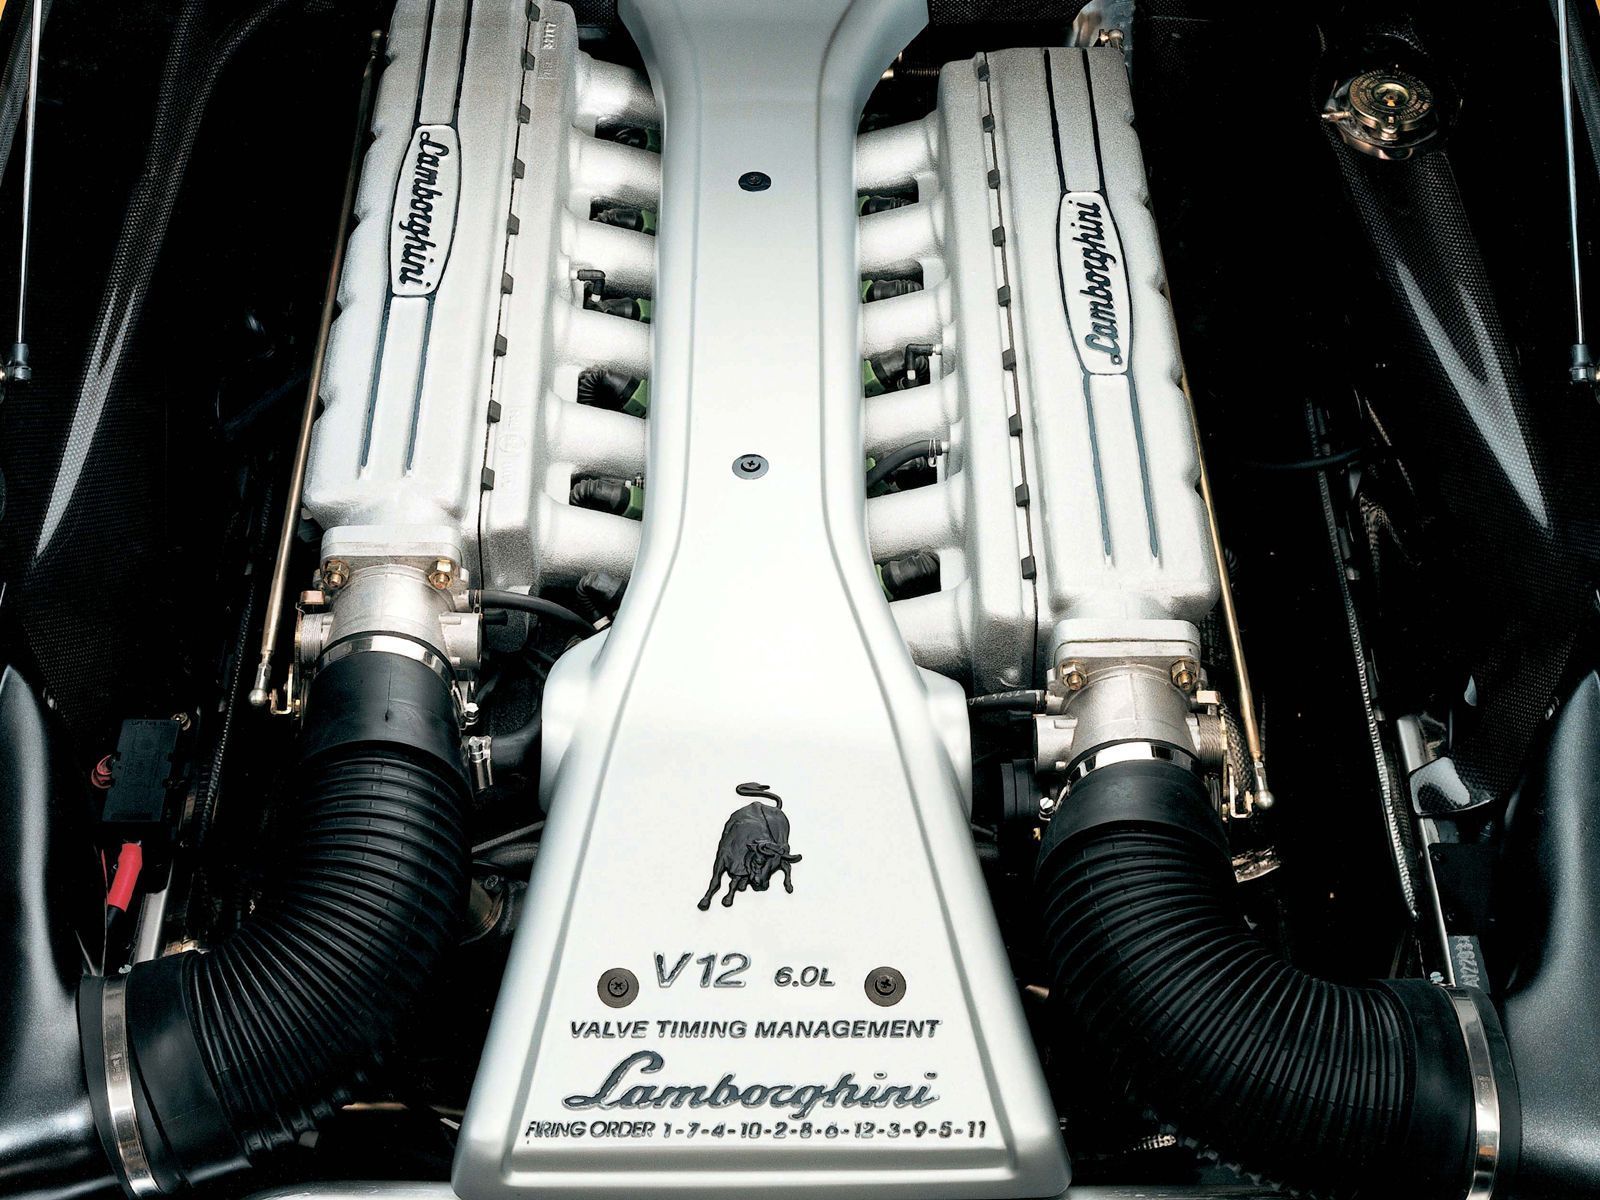 1990 - 2001 Lamborghini Diablo